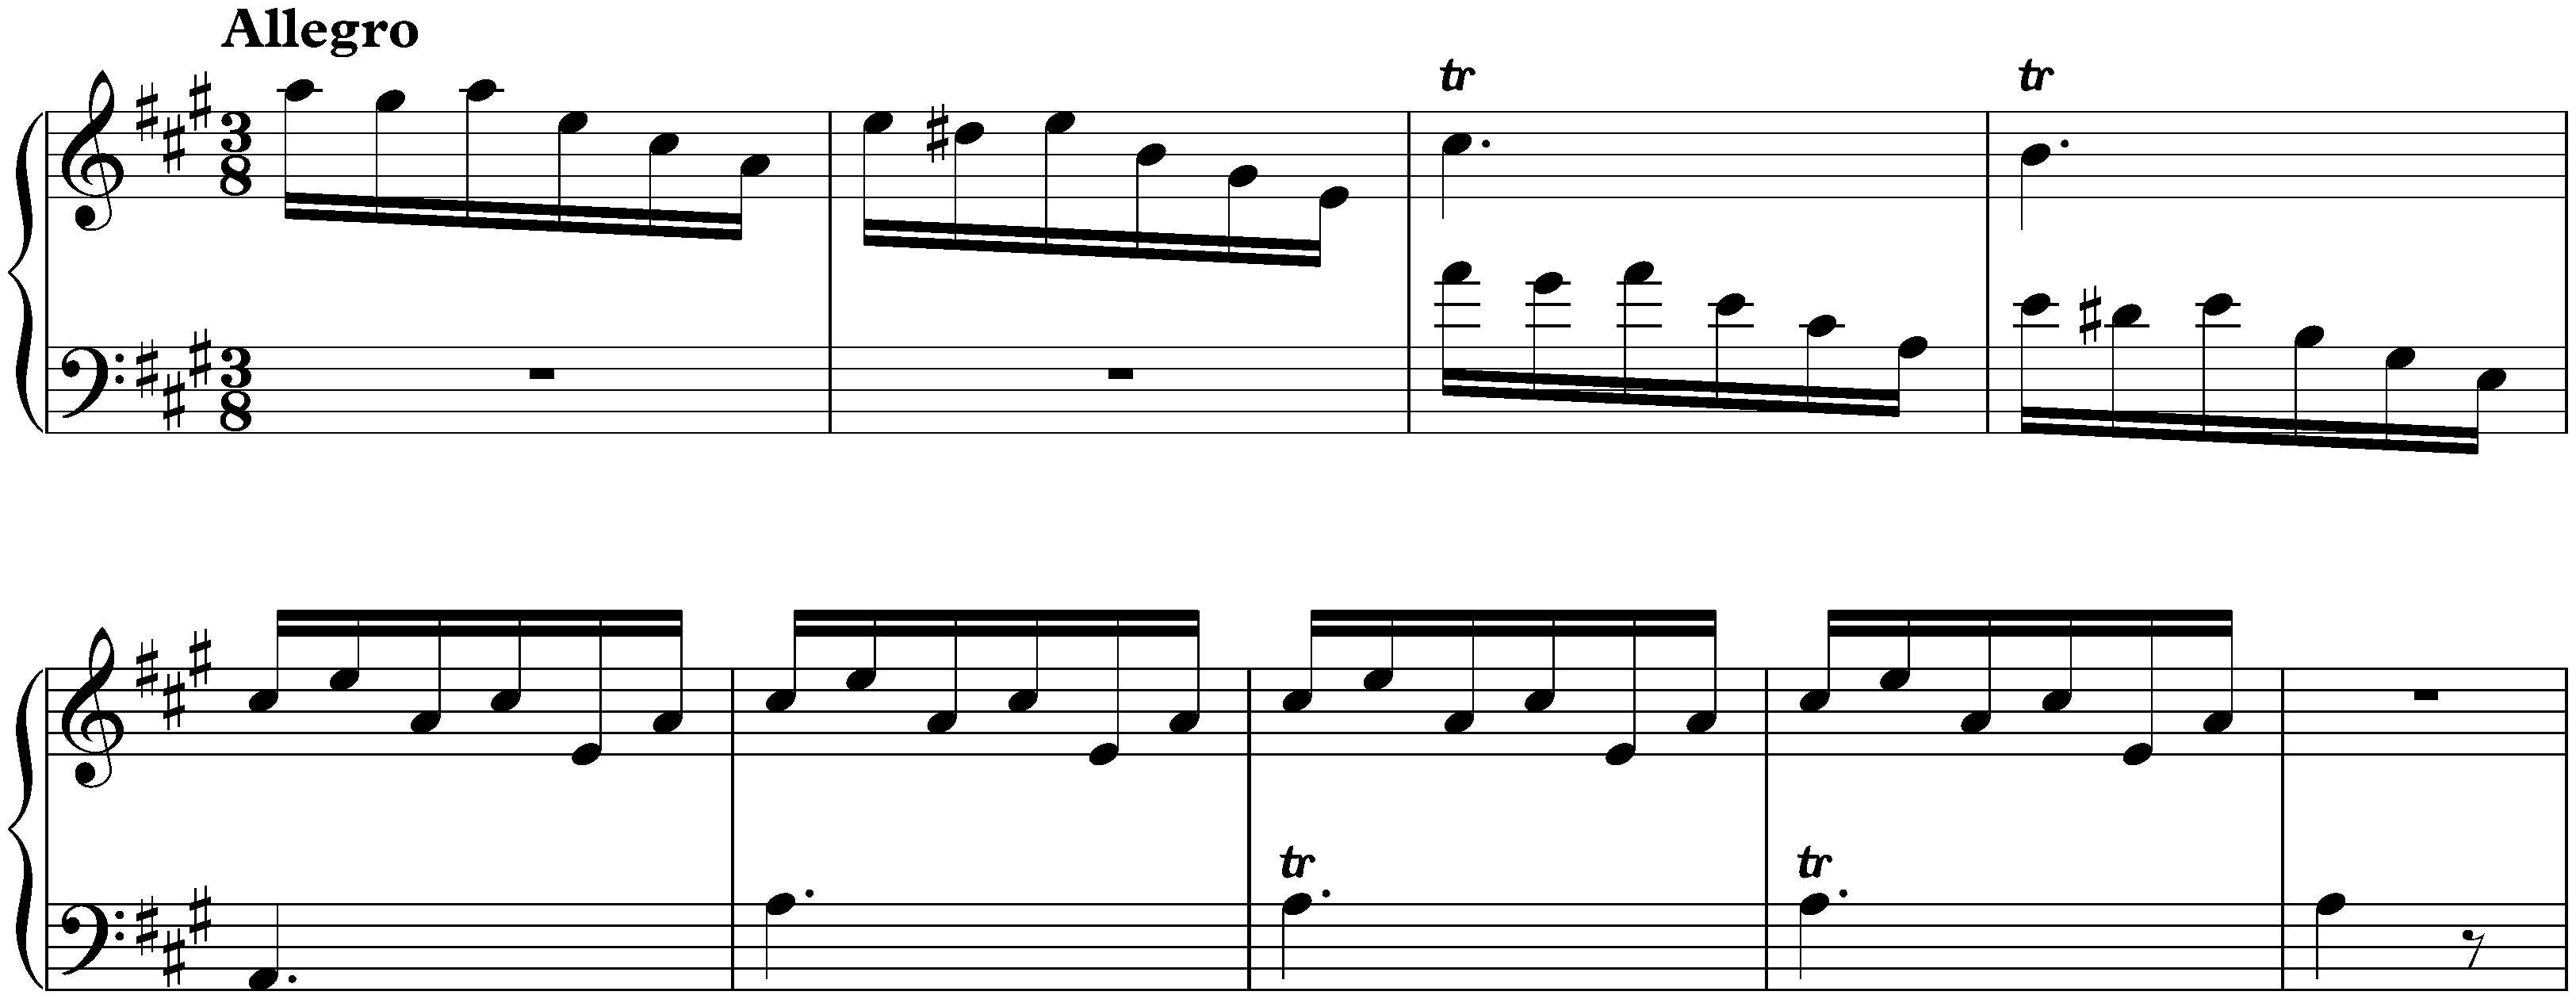 Sonata in A major, K. 62